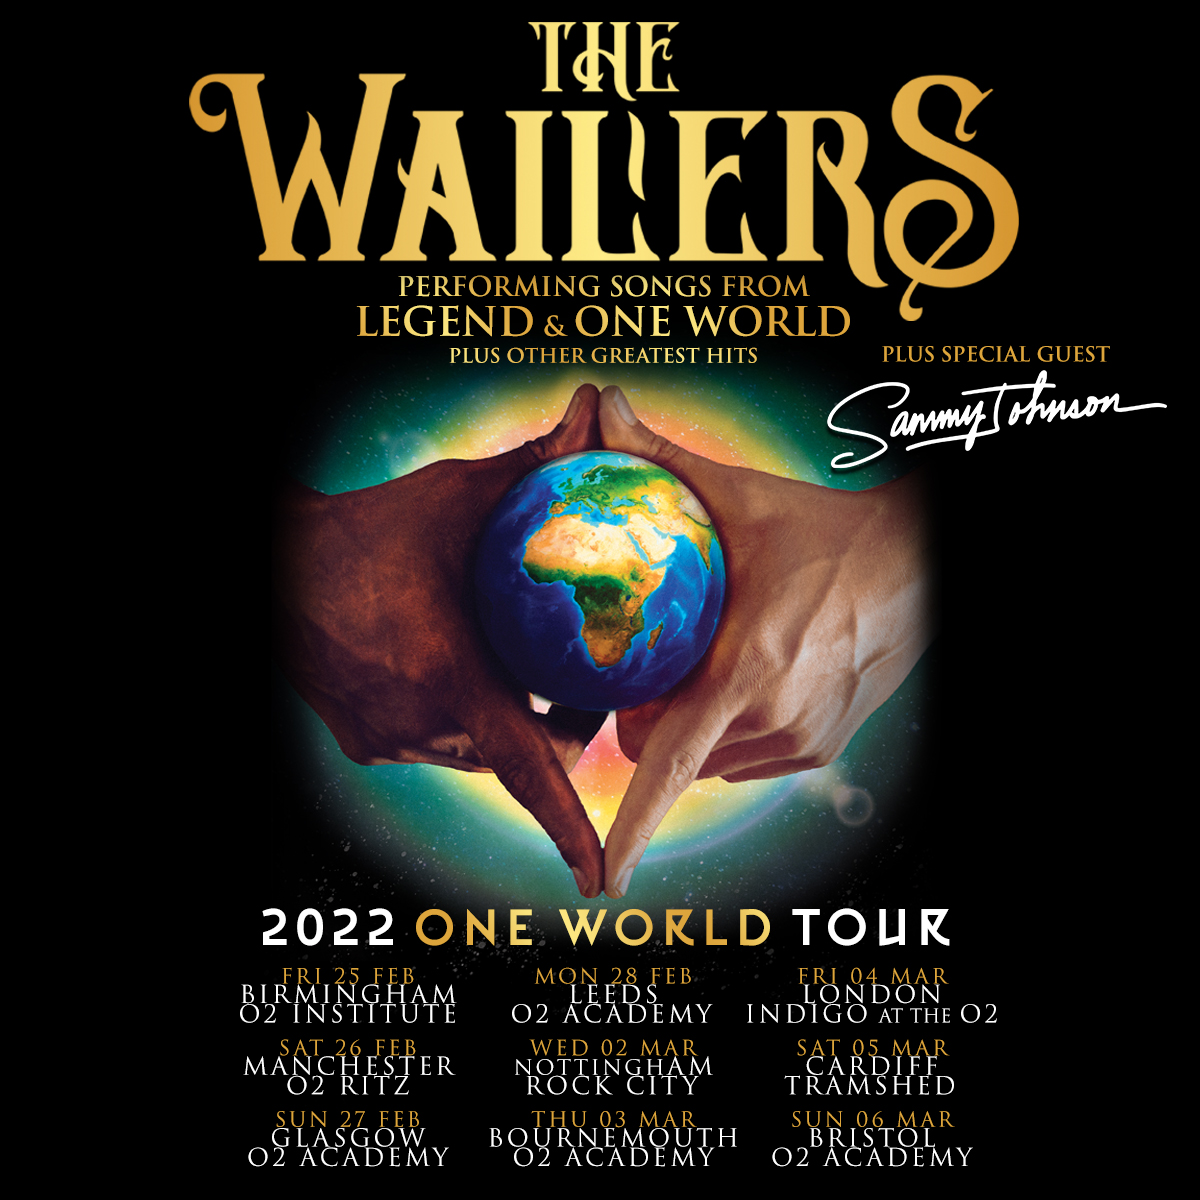 2020 ONE WORLD TOUR